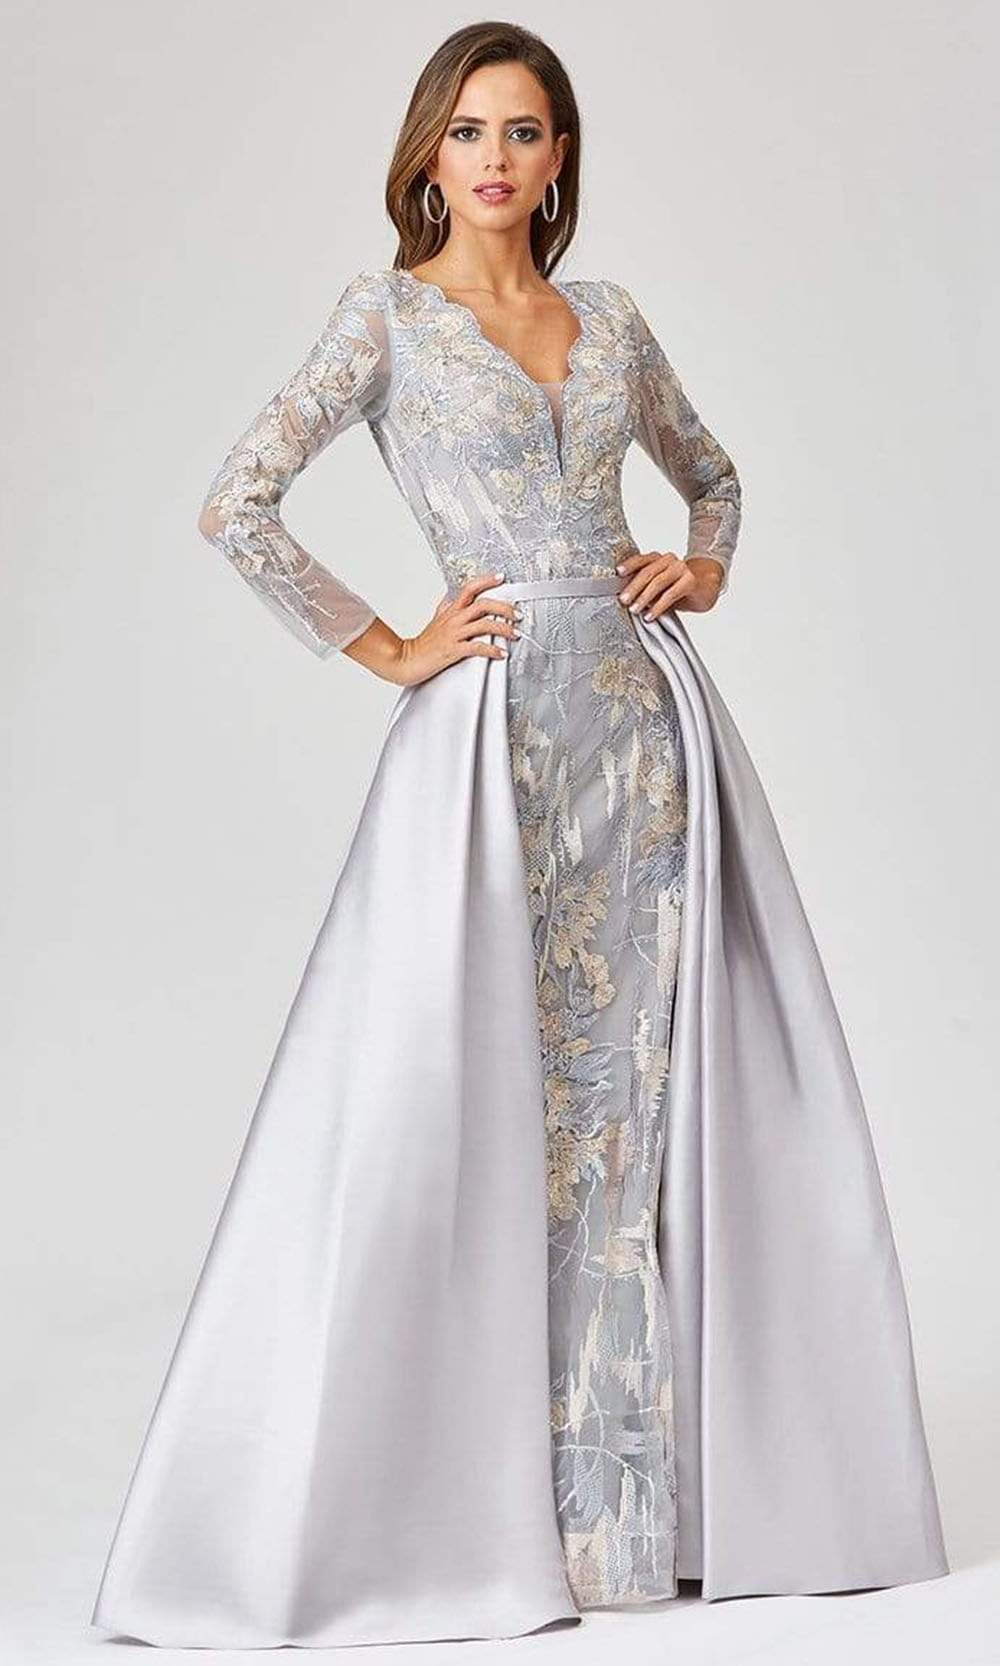 Lara Dresses - 29468 Scalloped V-Neck Embroidered Overskirt Gown
